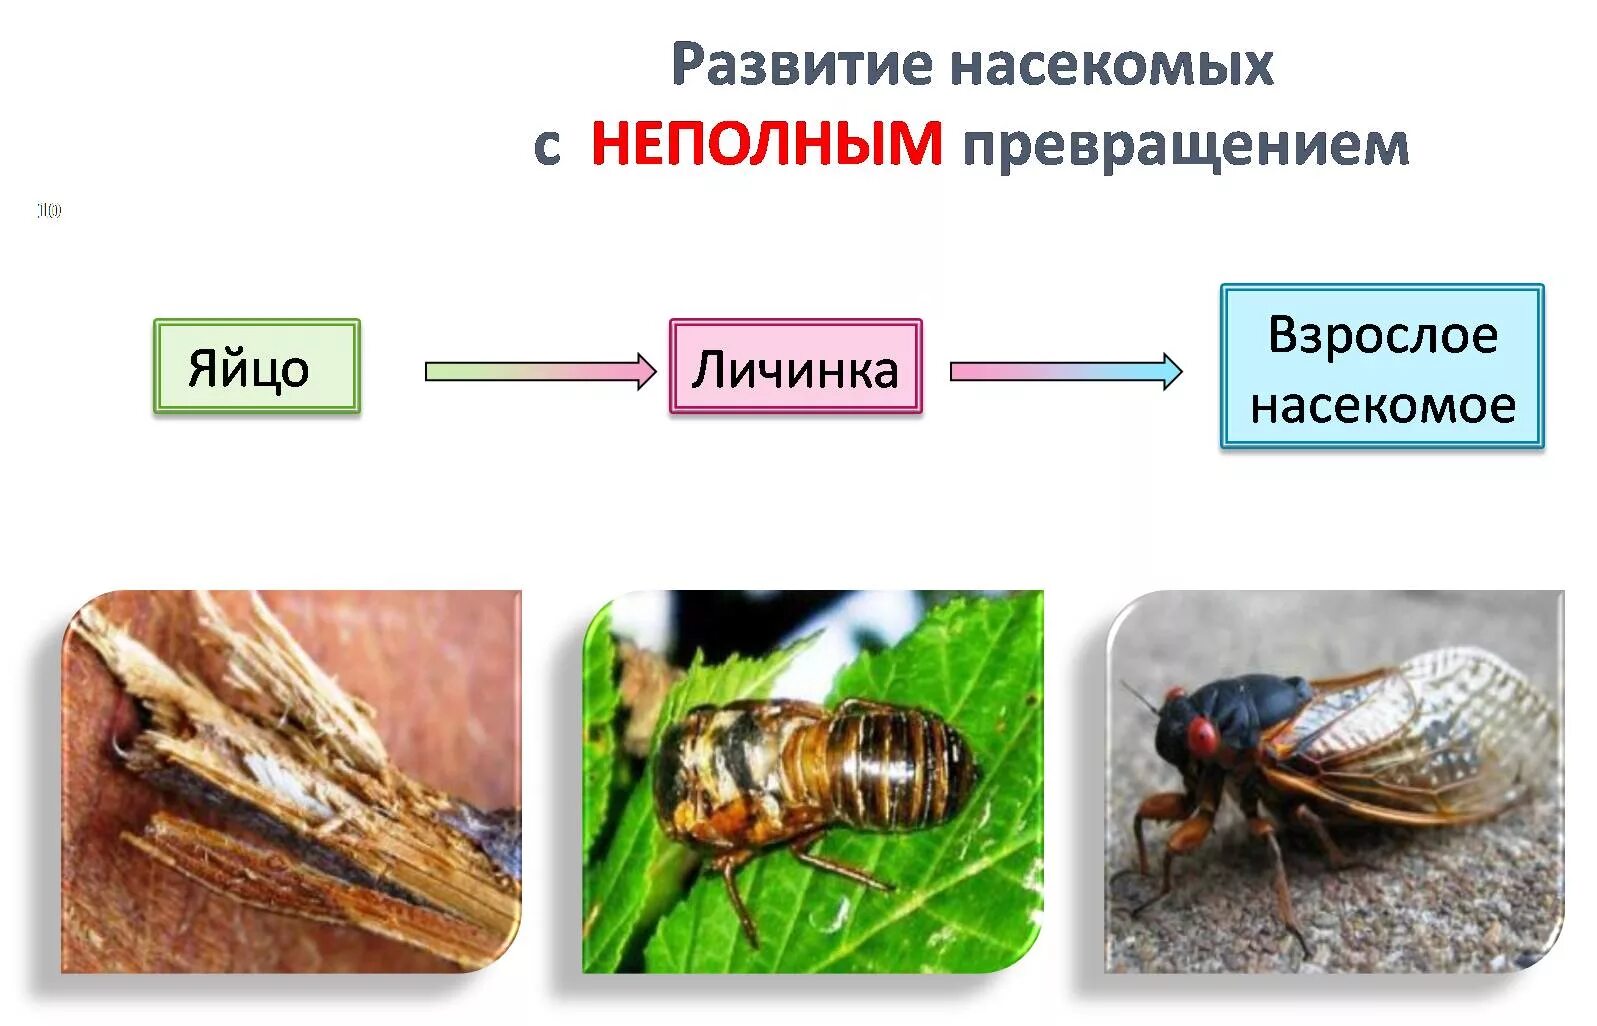 Развитие с неполным метаморфозом у насекомых. Размножение насекомых с полным и неполным превращением. Развитие с неполным превращением личинка. Схема развития насекомых с неполным превращением. Полный метаморфоз стадии